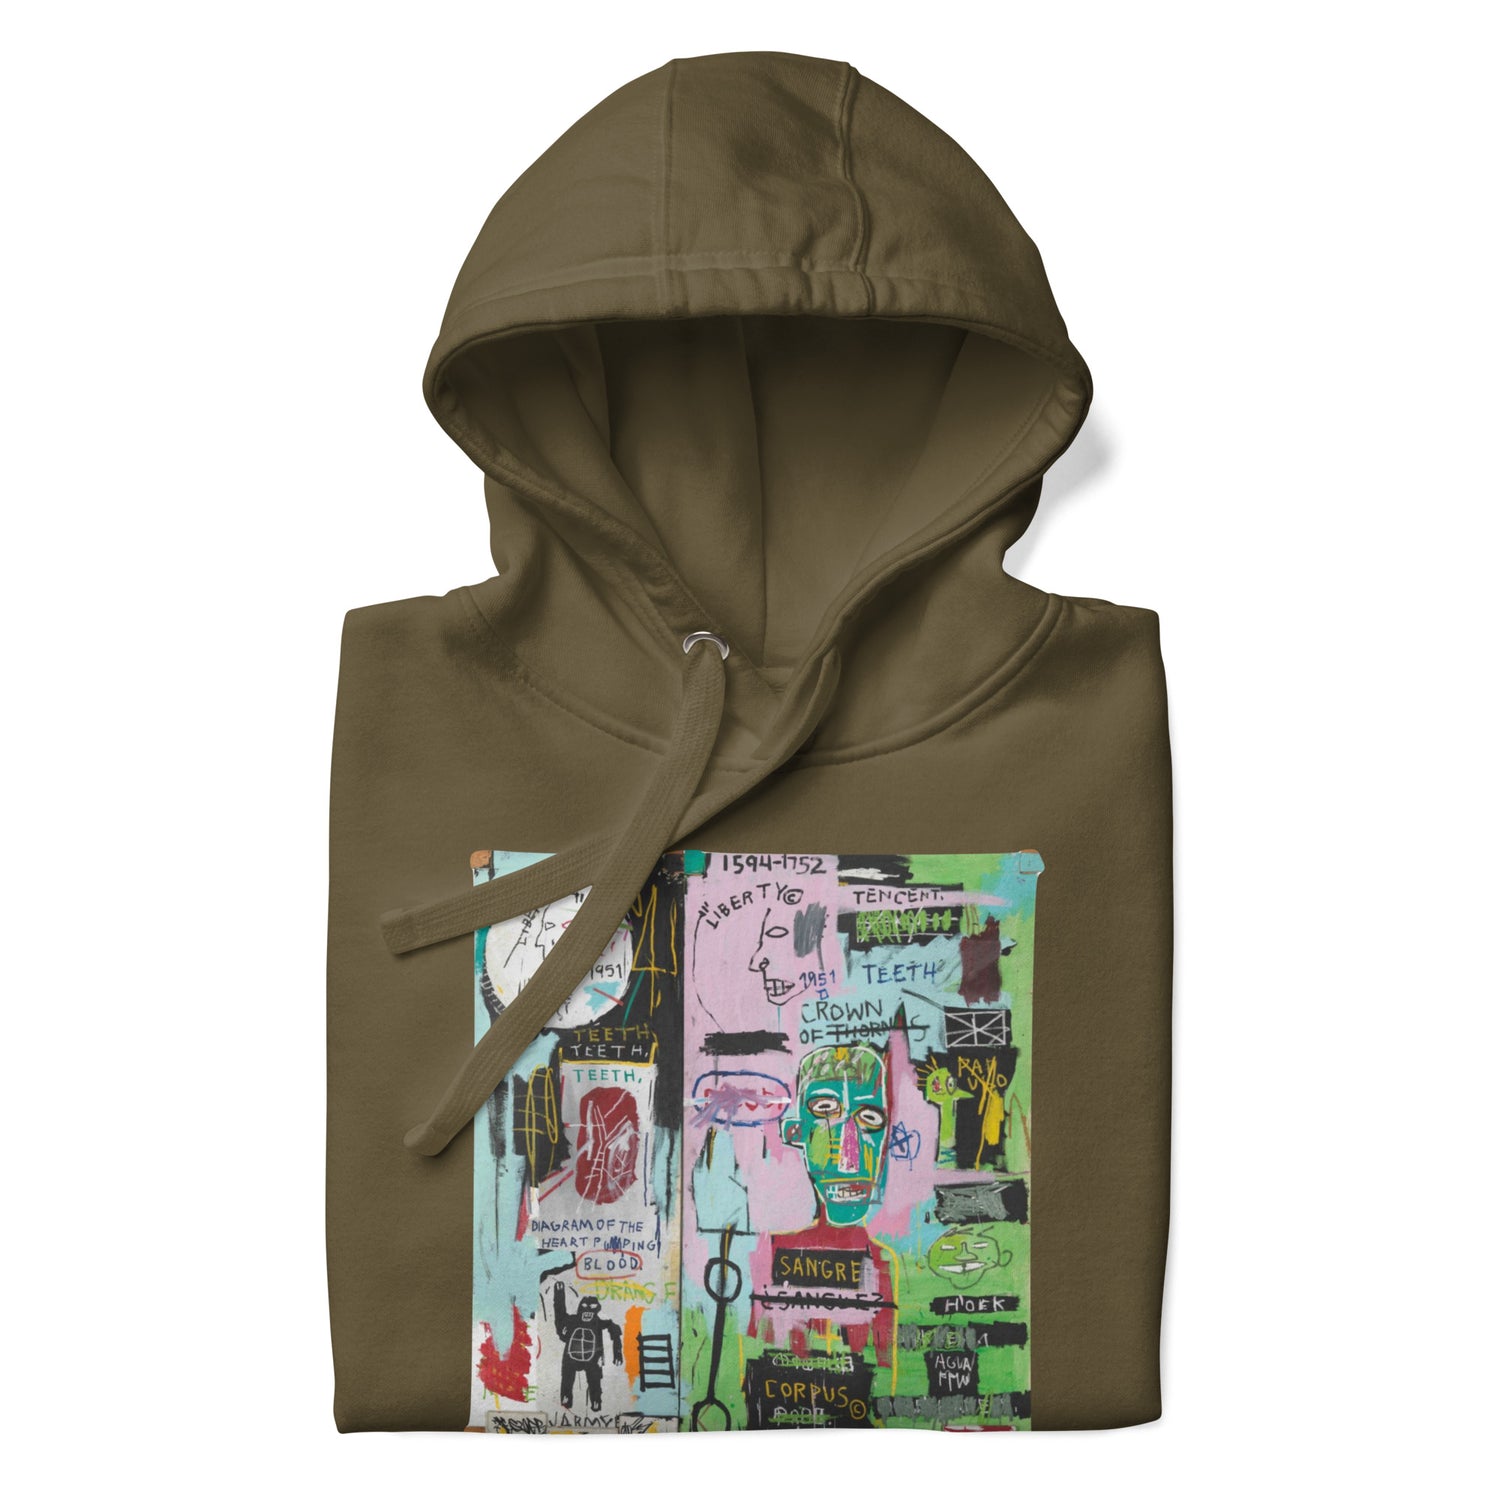 Jean-Michel Basquiat "In Italian" Artwork Printed Premium Streetwear Sweatshirt Hoodie Olive Green